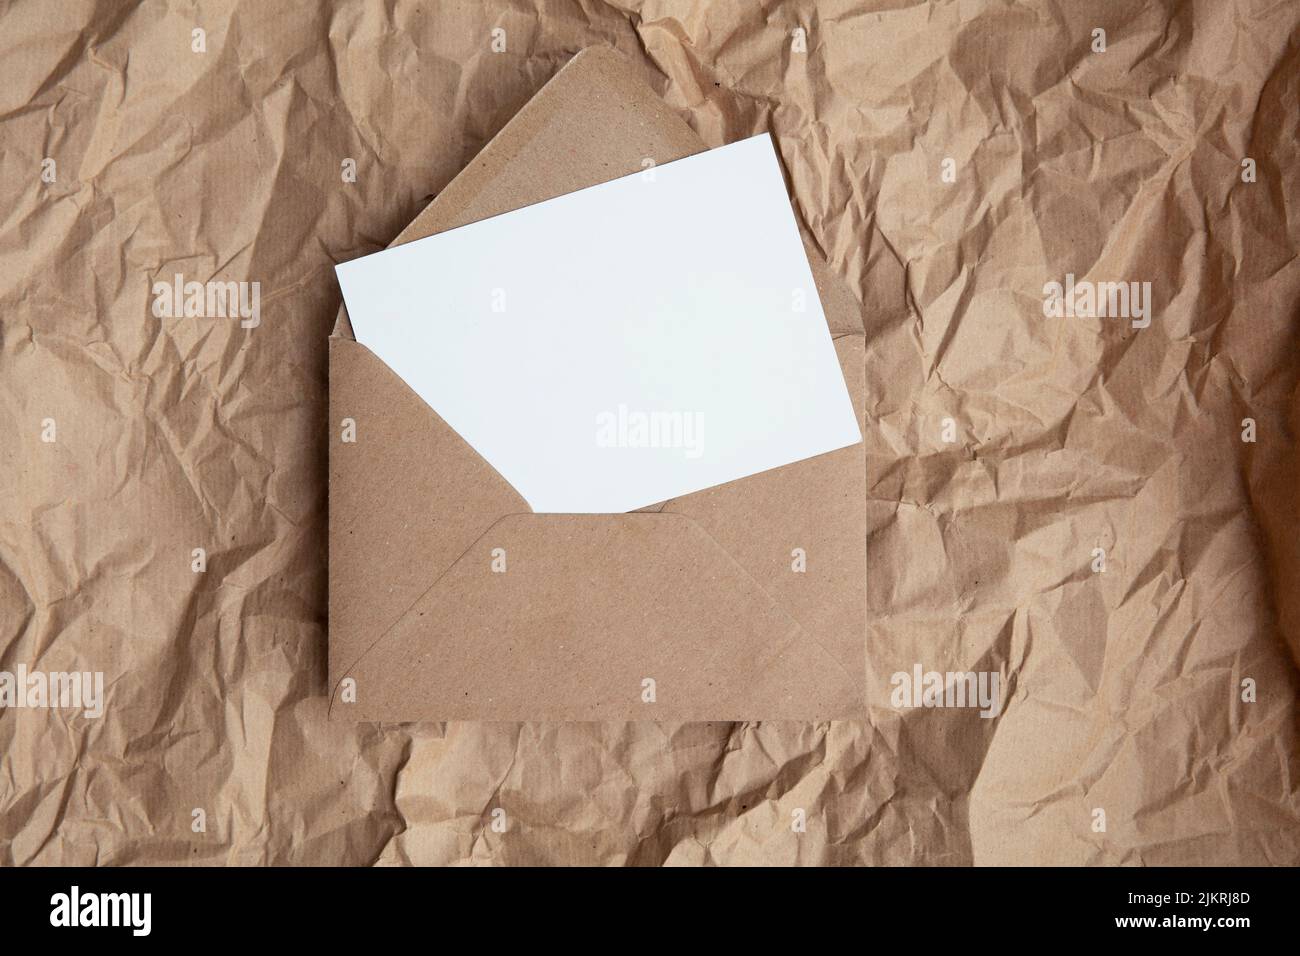 Maquette de carte vierge avec modèle d'enveloppe en papier kraft brun sur papier brun froissé Banque D'Images